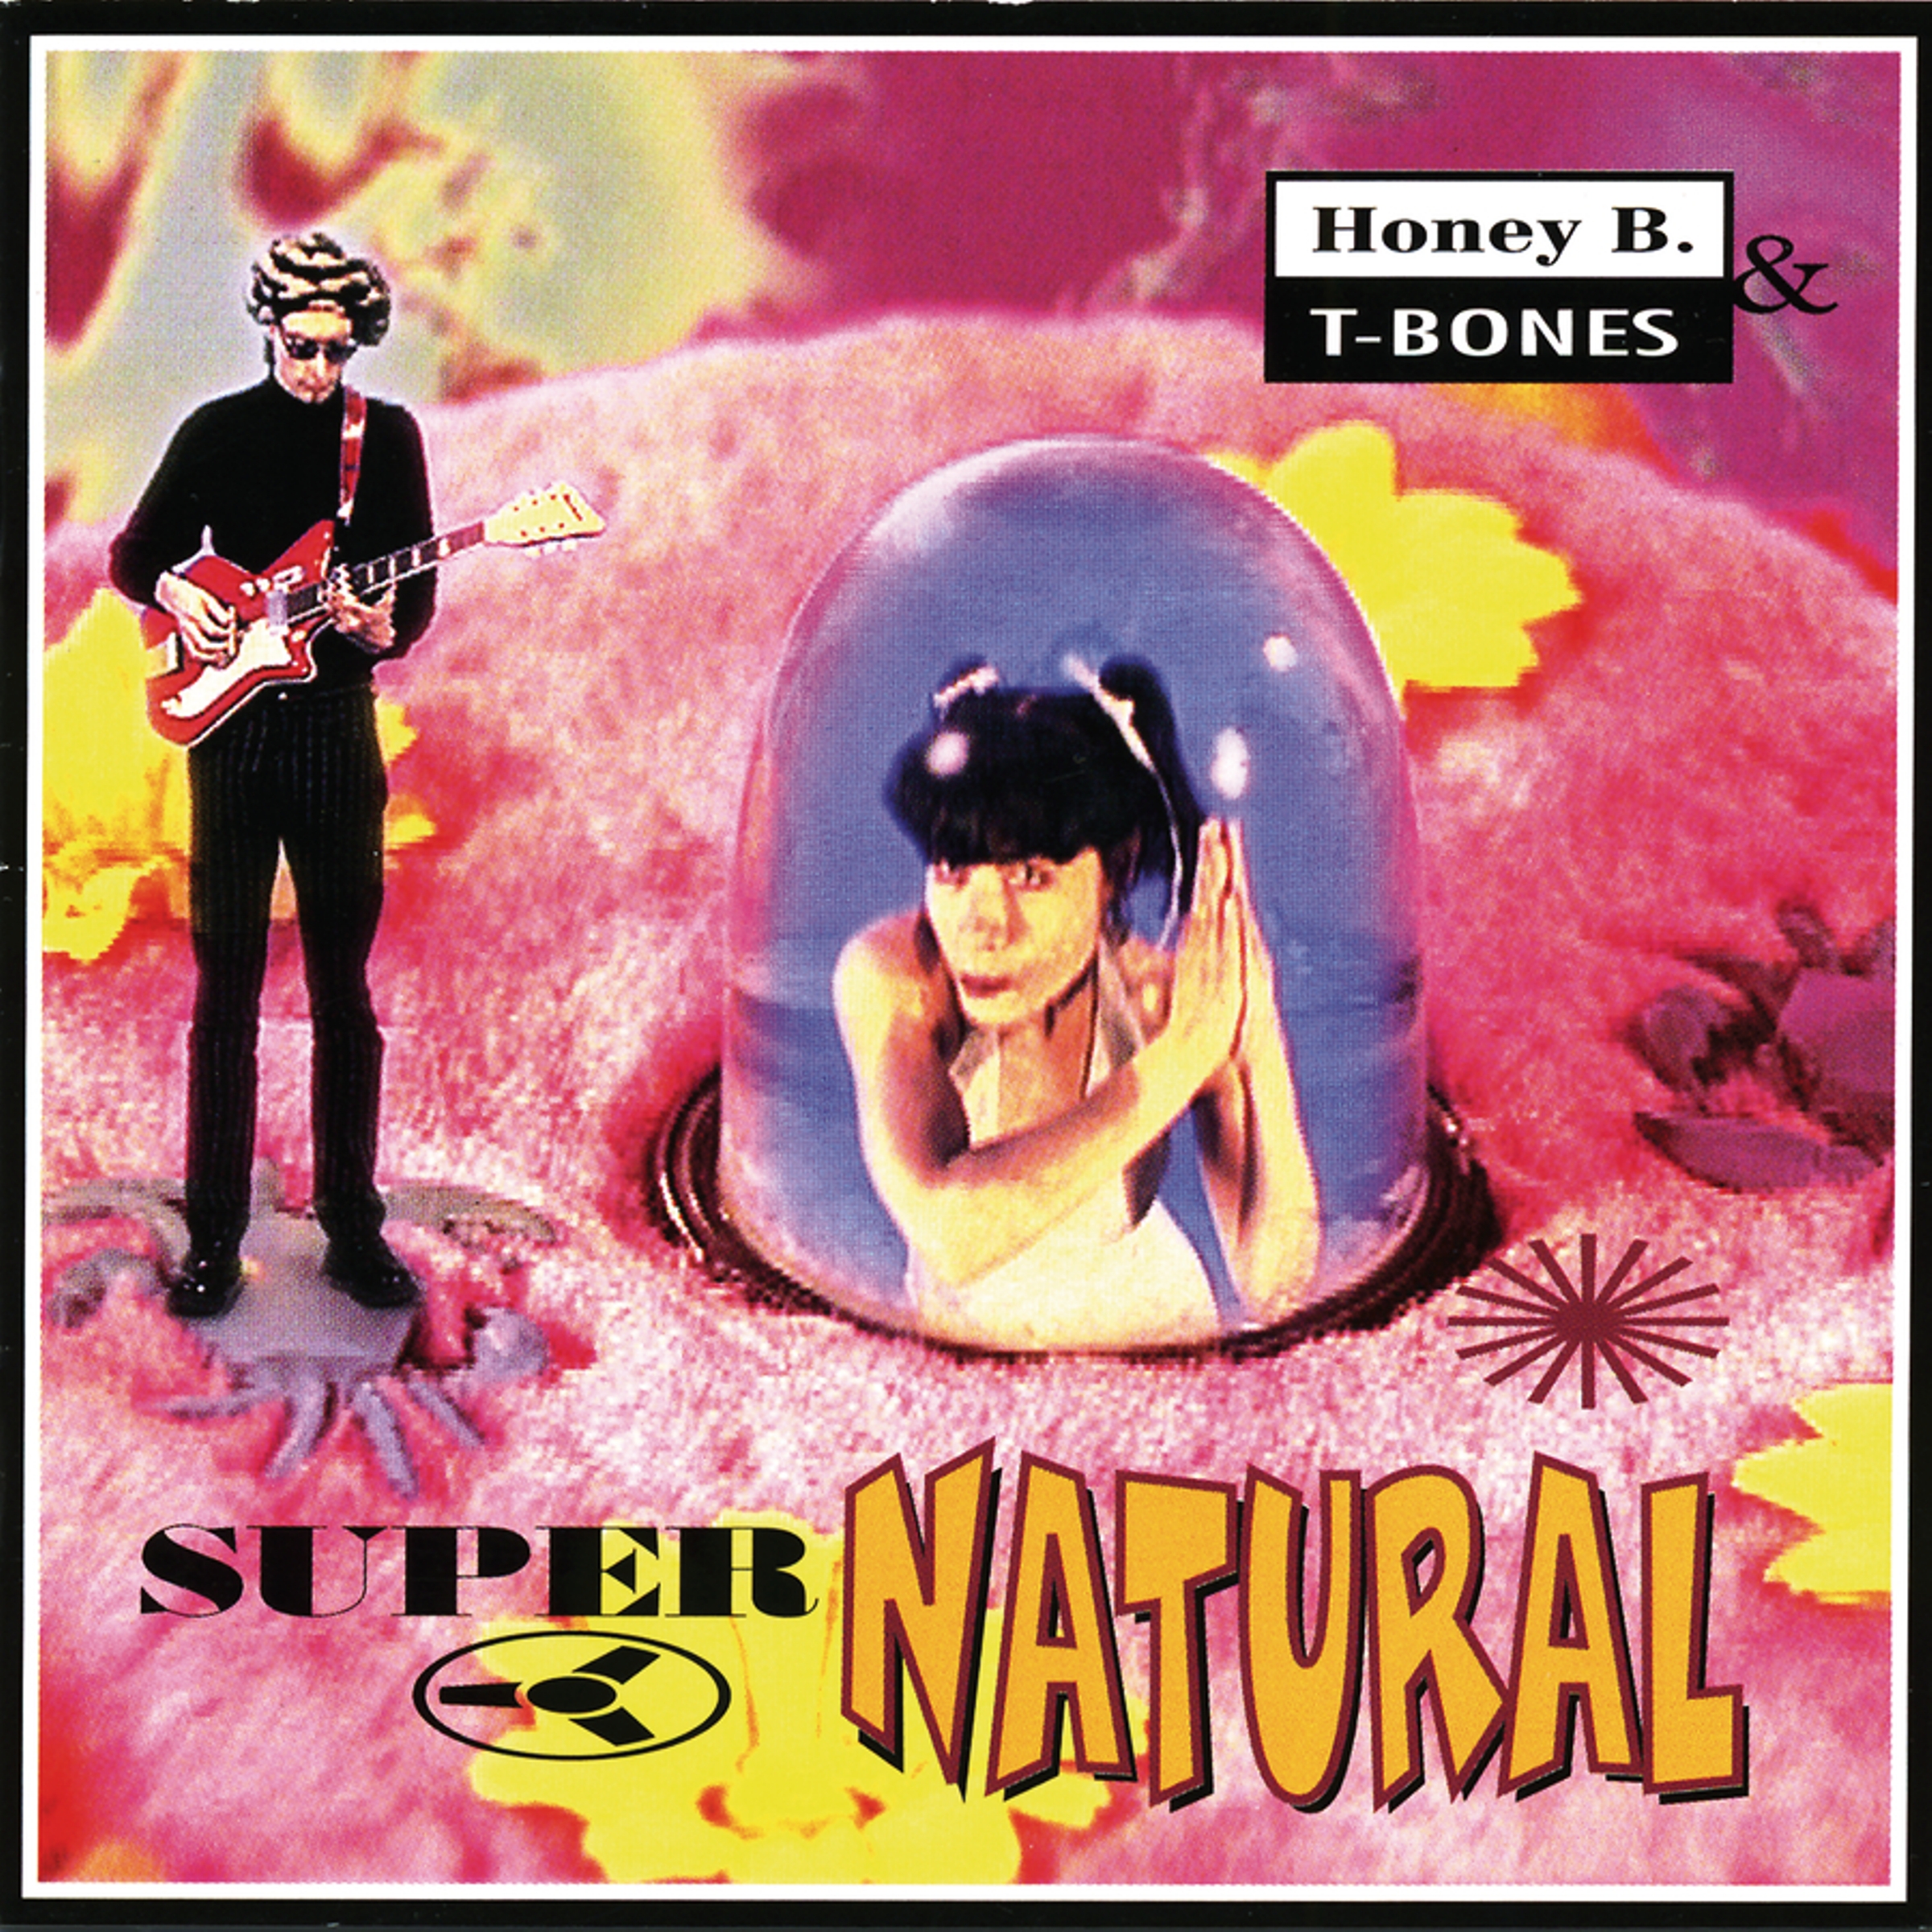 Honey B. & T-Bones - Supernatural - CD